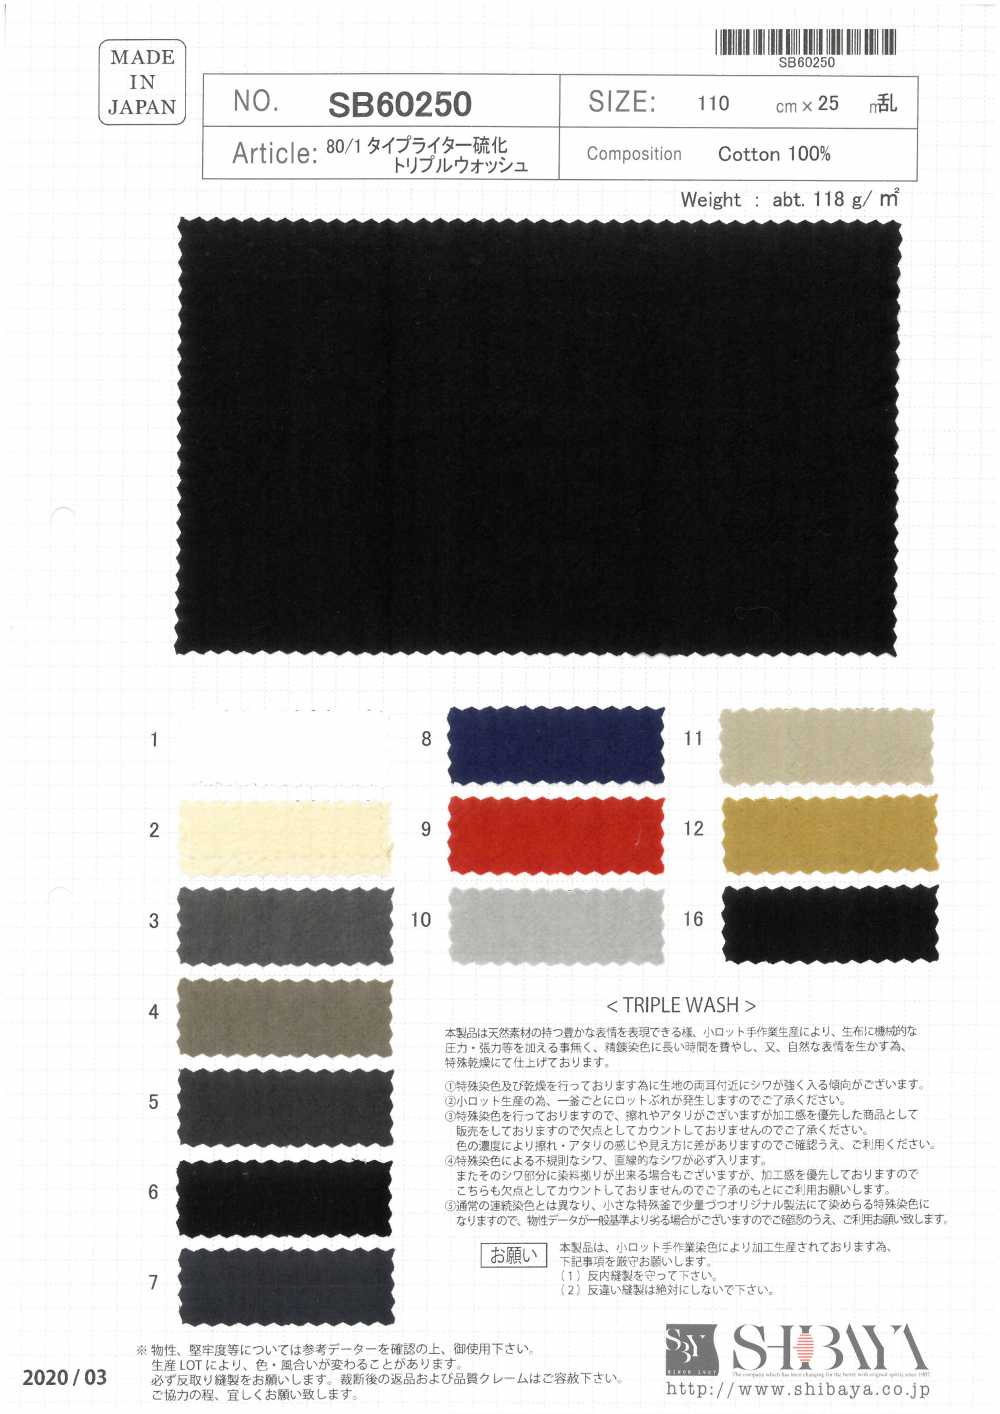 SB60250 Lavagem Tripla De Sulfeto De Pano De Máquina De Escrever 80/1[Têxtil / Tecido] SHIBAYA